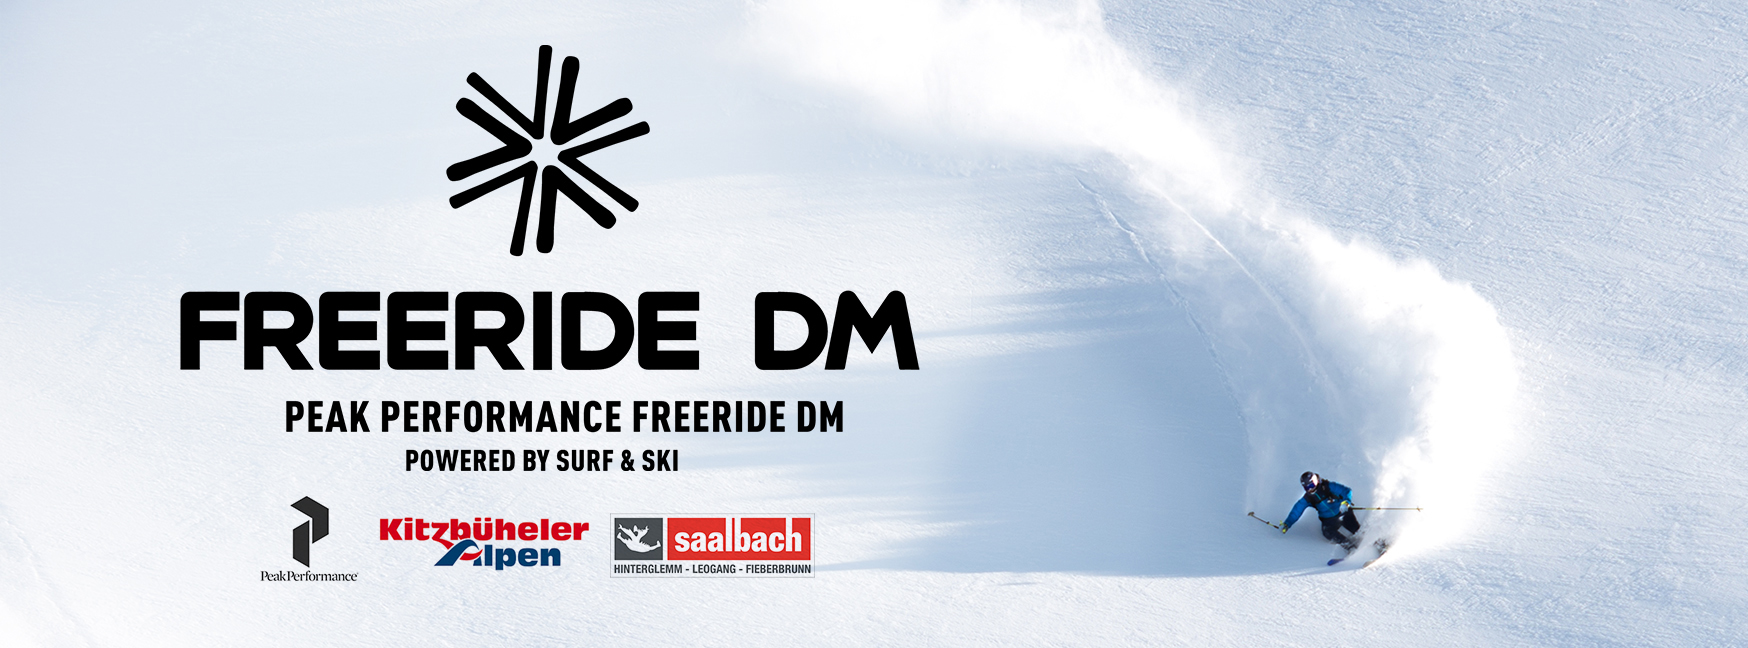 Freeride DM 2019 1